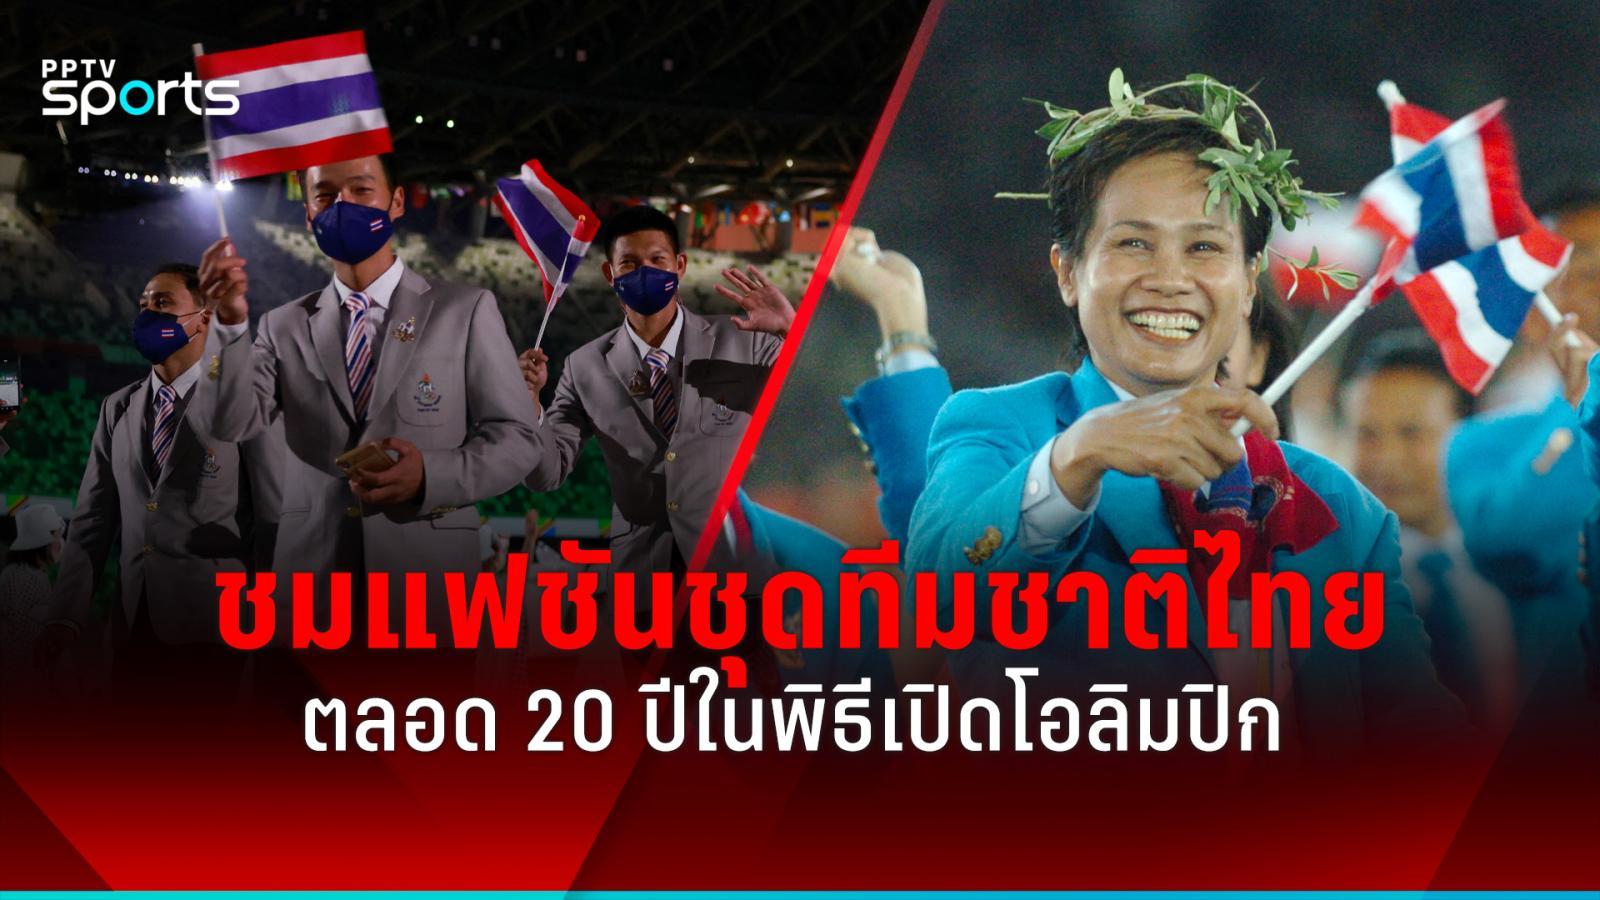 回顾近20年奥运会开幕式上的泰国国家队运动员：PPTVHD36